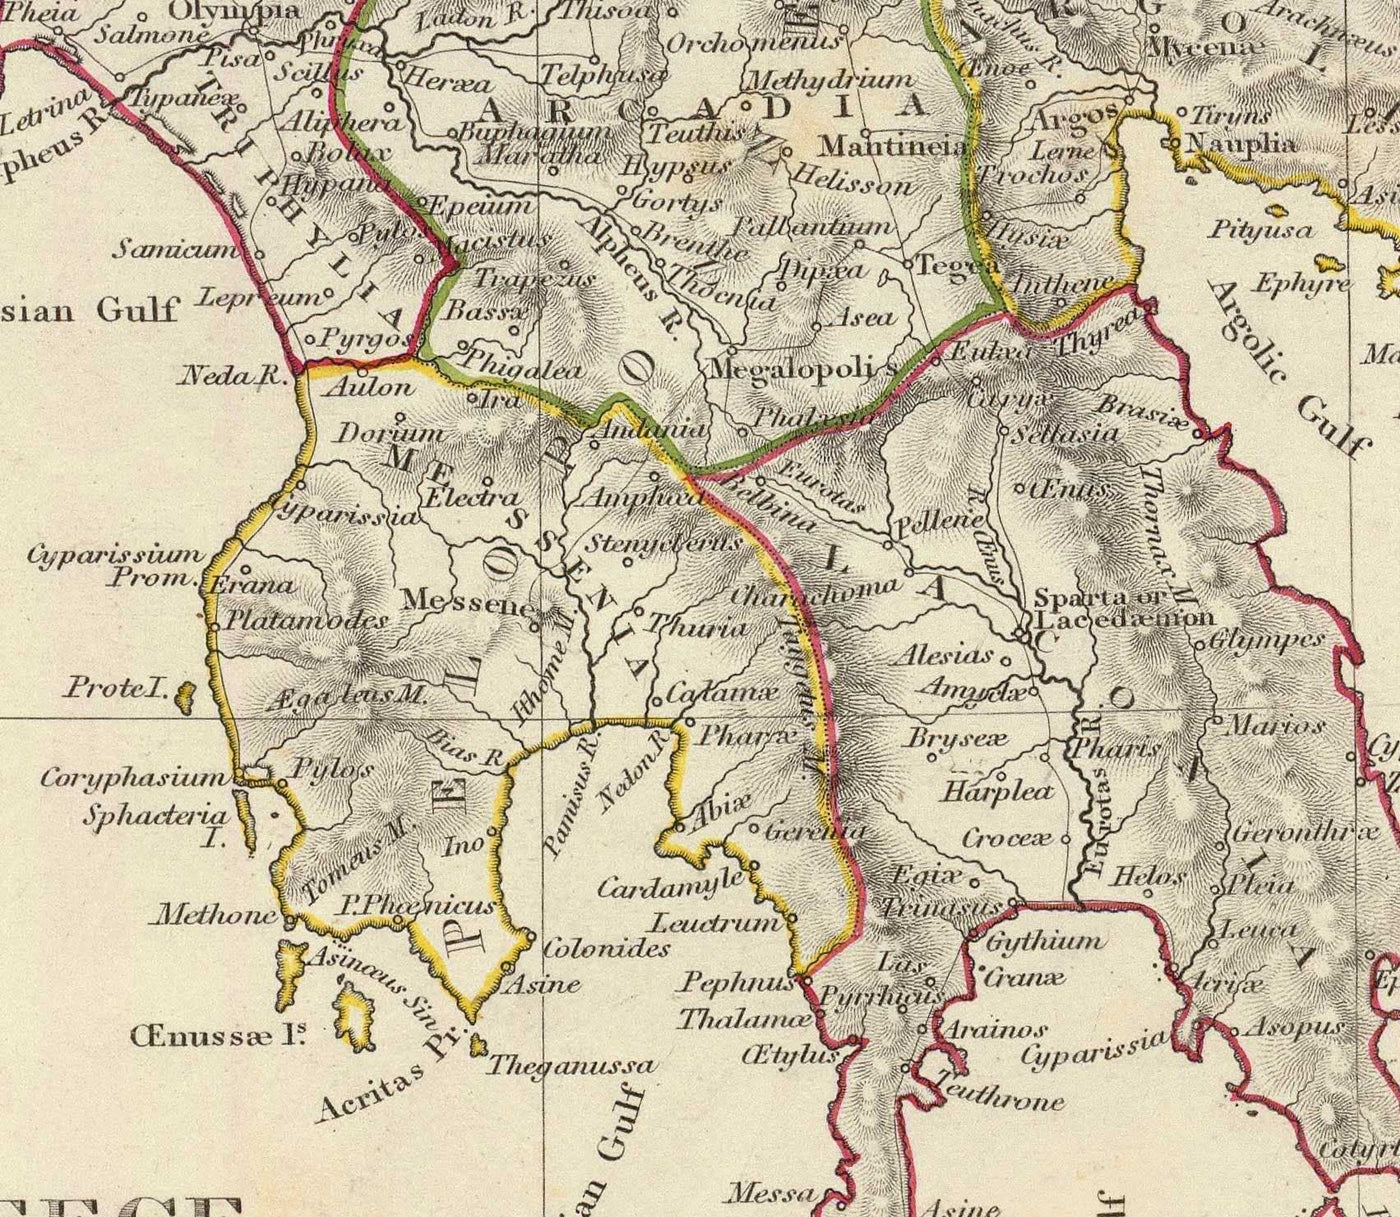 Mapa antiguo de la antigua Grecia, 1829, por Sduk - Creta, Egeo, Atenas, Arcadia, Attica, Cícladas, Zakynthos